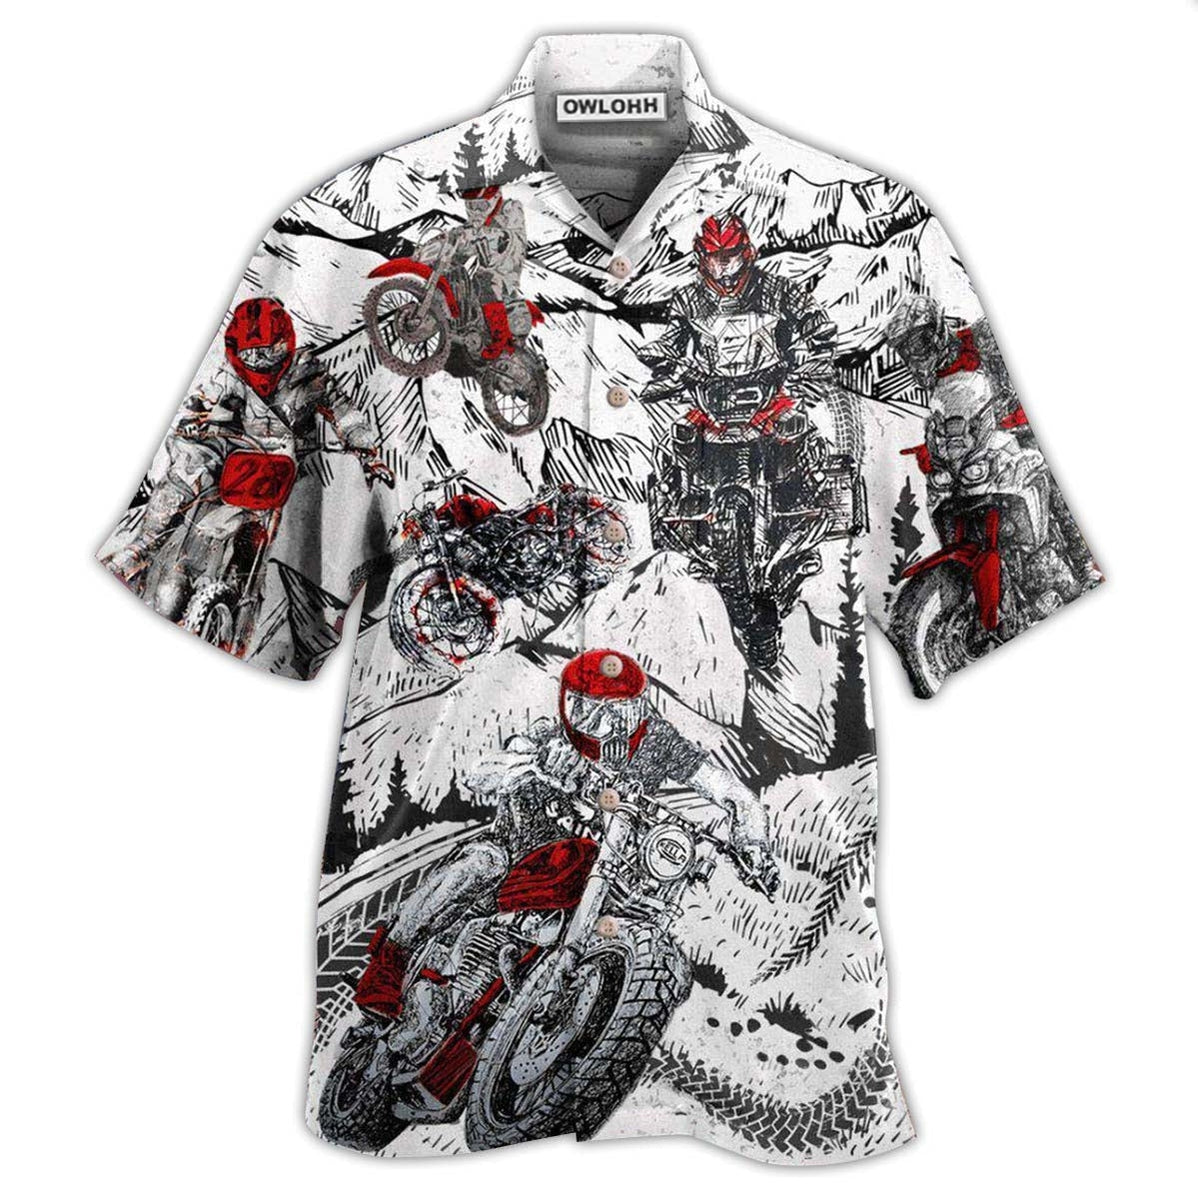 Hawaiian Shirt / Adults / S Motorcycle What Is Life I'm So Happy - Hawaiian Shirt - Owls Matrix LTD